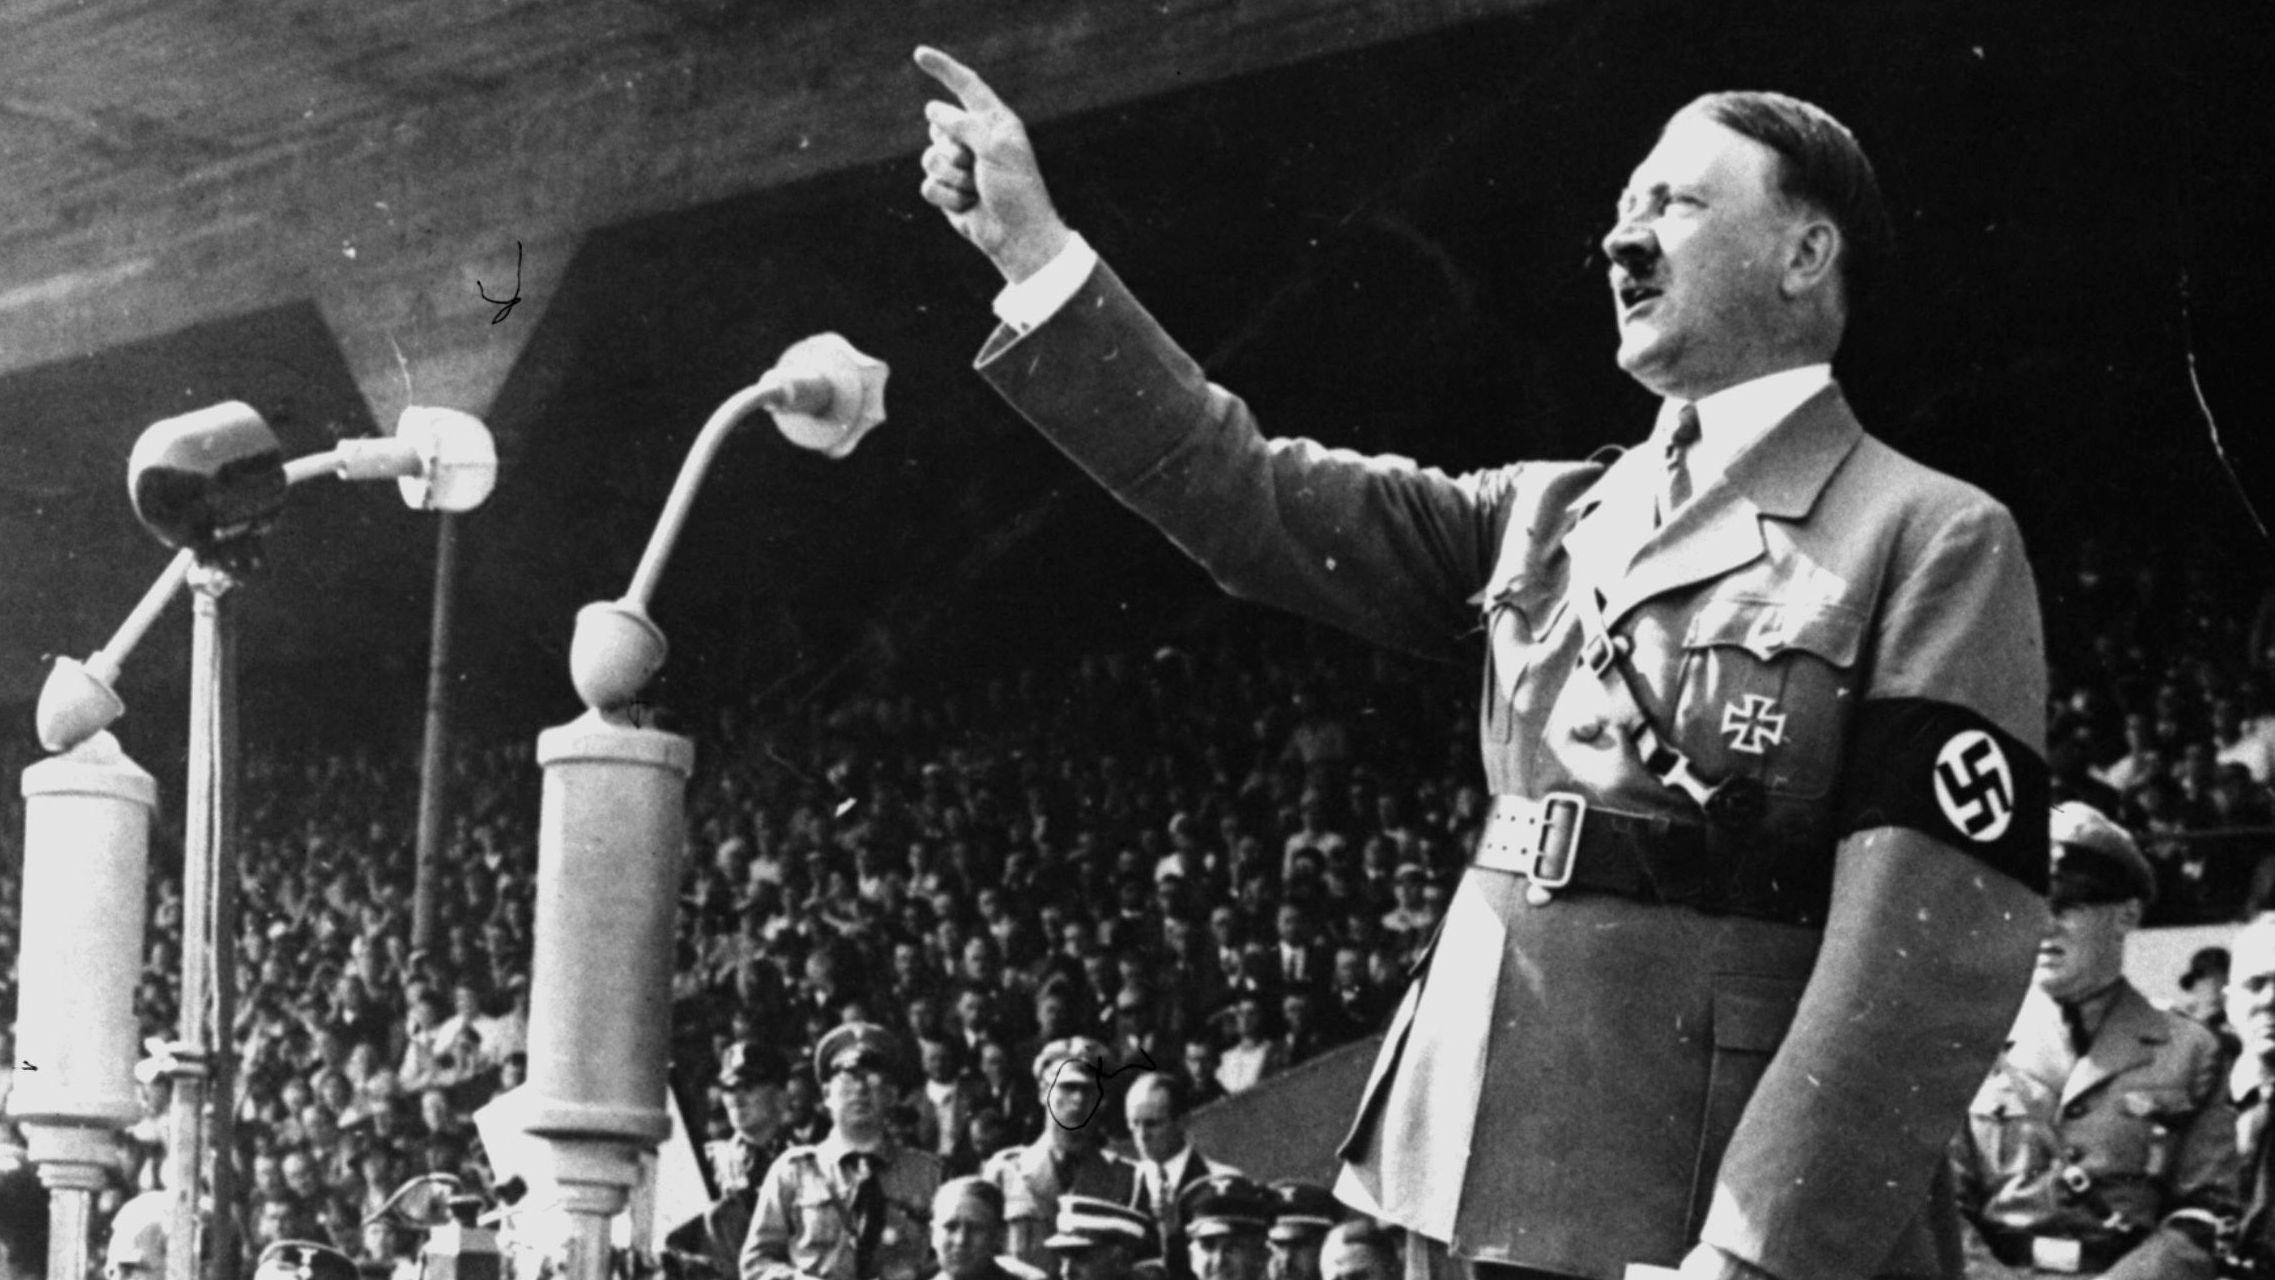 A Hitler true believer's unintentional warning | Column